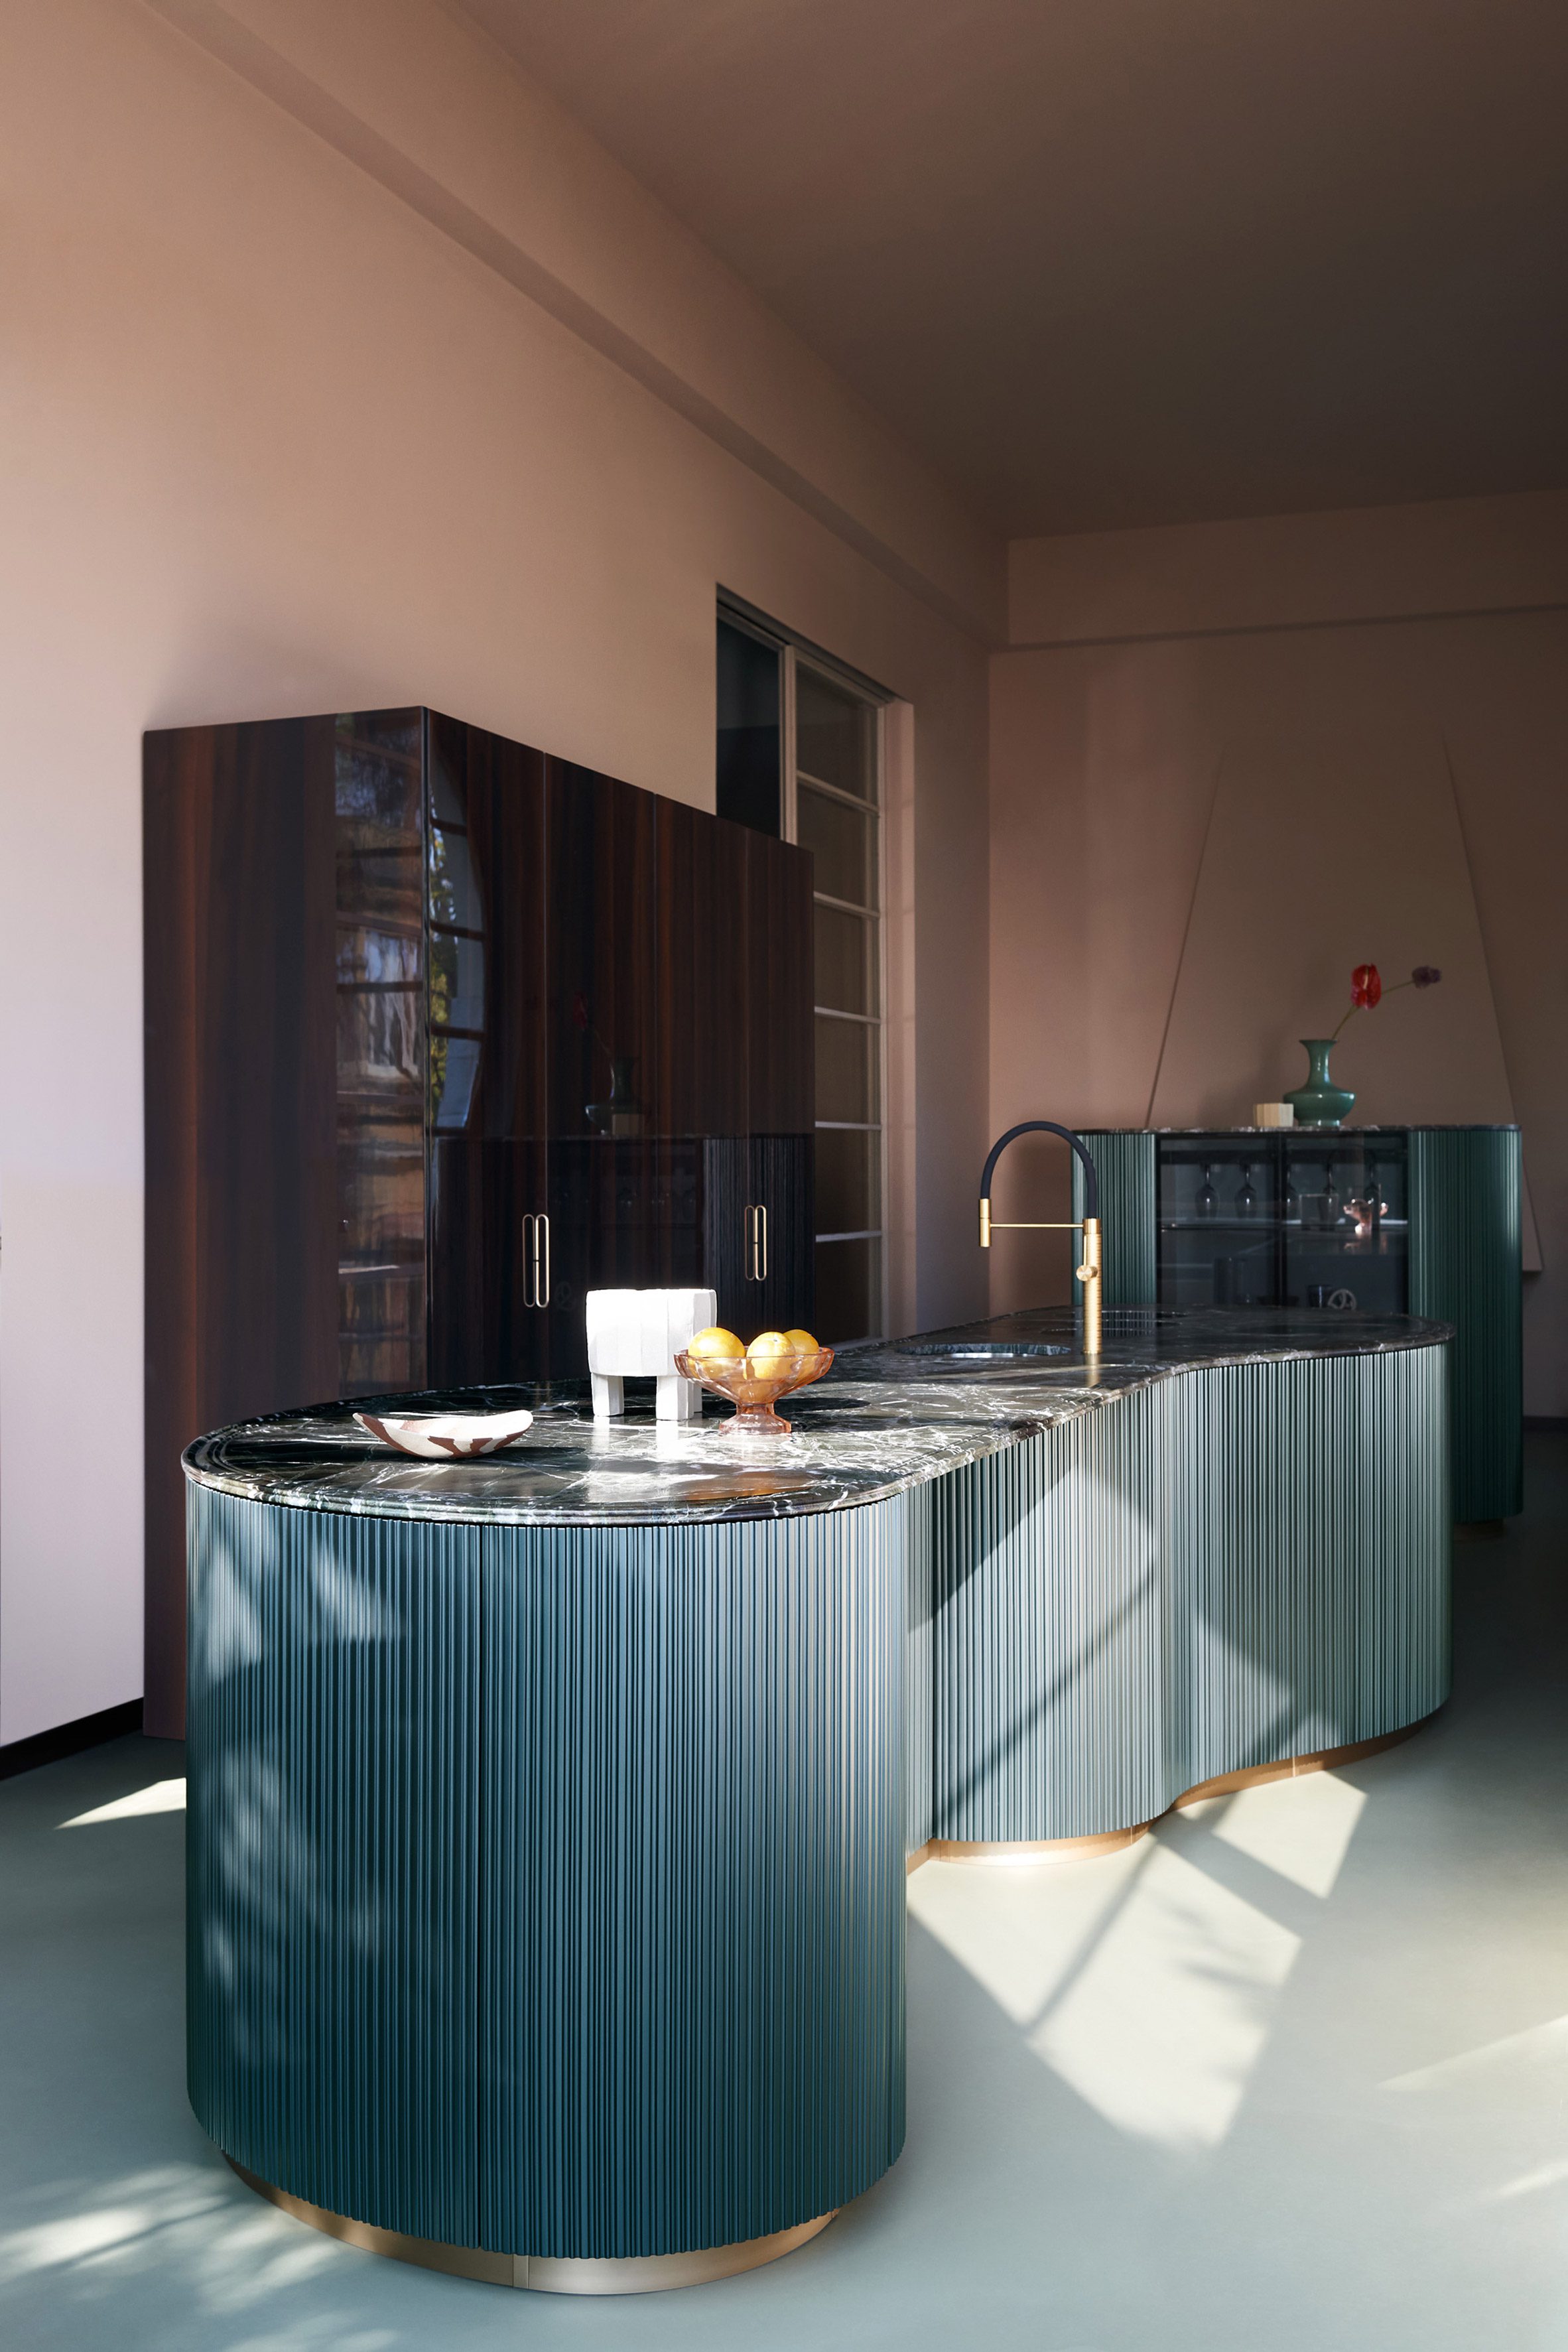 Cesar的厨房和餐饮家具系列是为“美观和性能”而设计的|ART-Arrakis | 建筑室内设计的创新与灵感